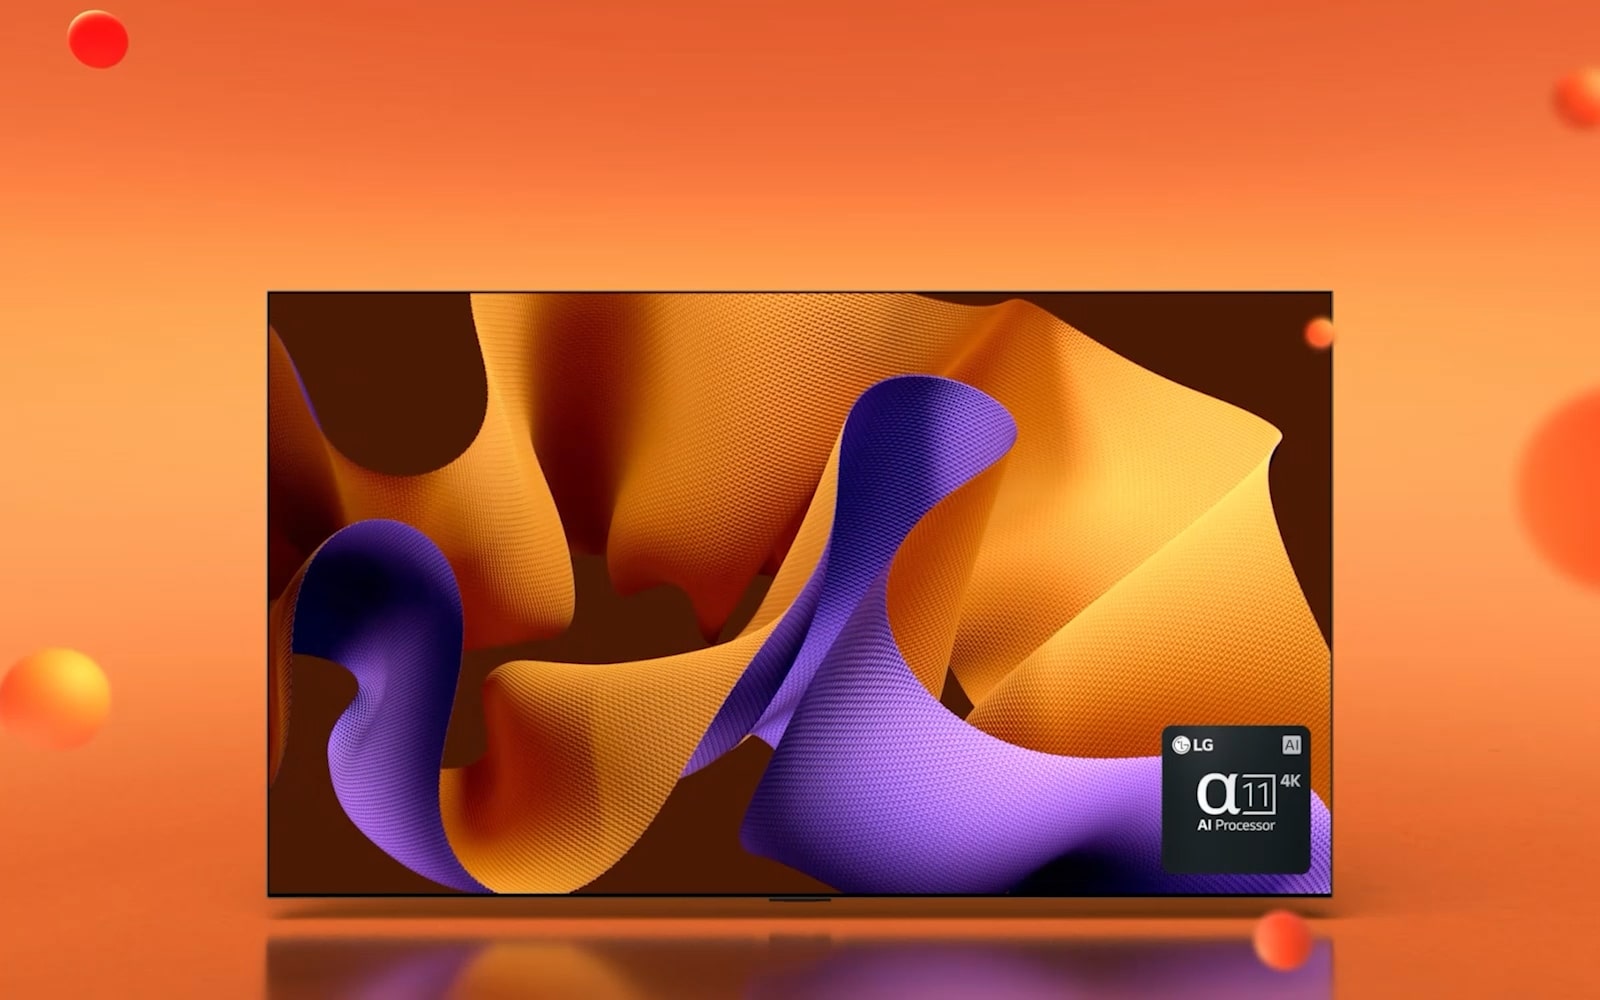 LG OLED G4 повернут на 45 градусов вправо с абстрактной фиолетово-оранжевой картиной на экране на оранжевом фоне с 3D-сферами, затем телевизор OLED поворачивается лицевой стороной вперед. В правом нижнем углу находится logo ИИ-процессора alpha 11 от компании LG.